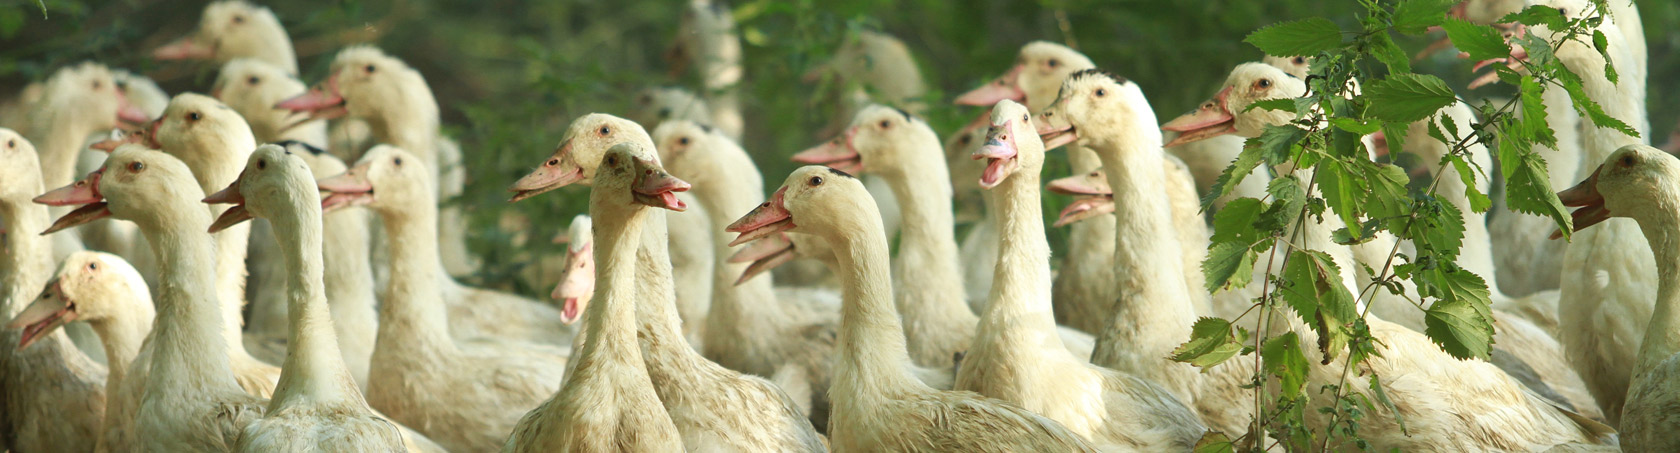 Elevage et production de canards gras et foie gras de canard